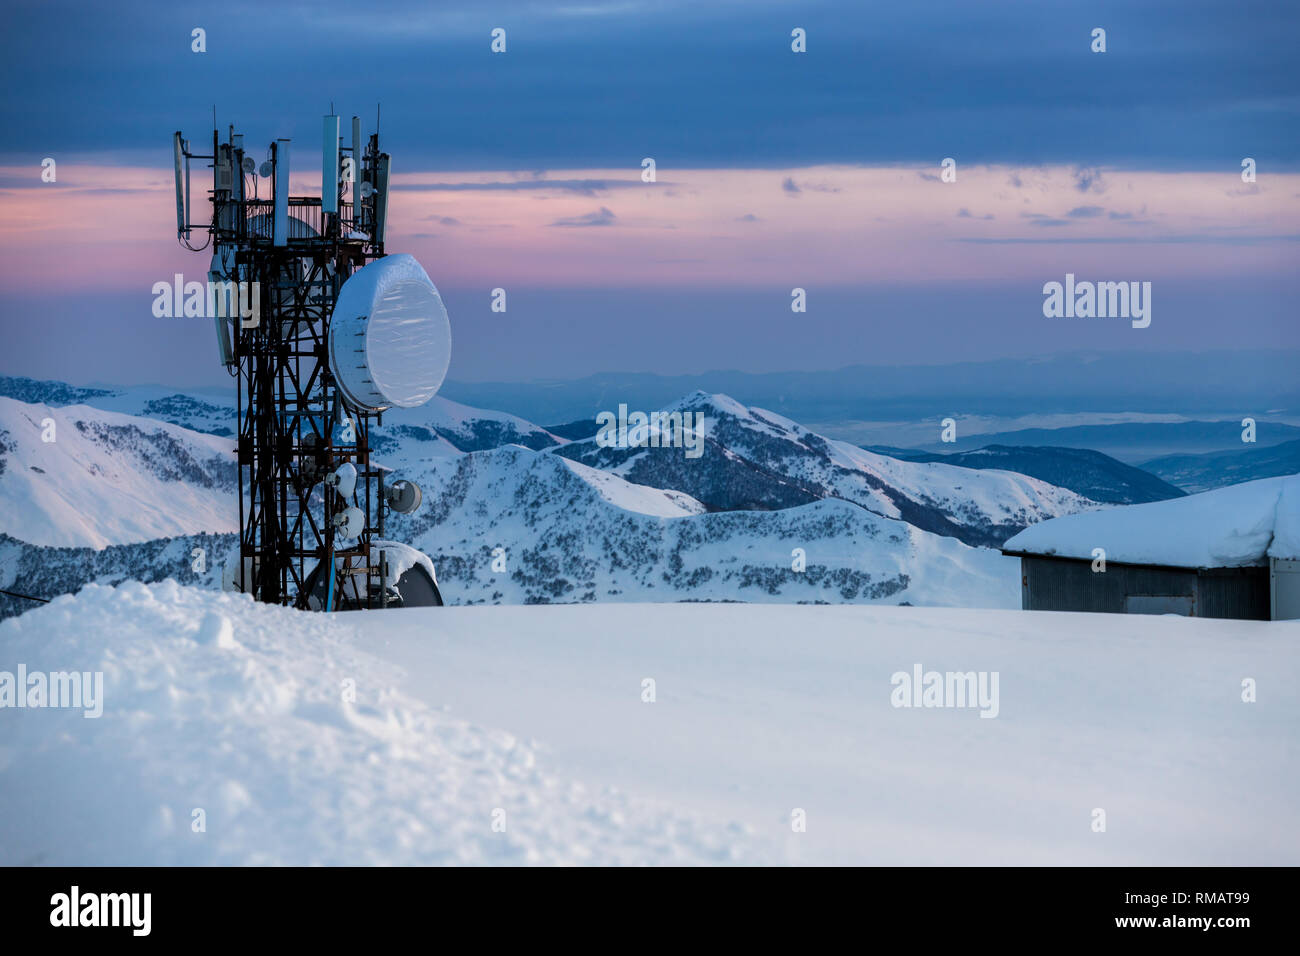 Tour de communication avec les antennes et paraboles à l'arrière-plan d'un paysage de montagne en hiver, au coucher du soleil. Gudauri, Géorgie Banque D'Images